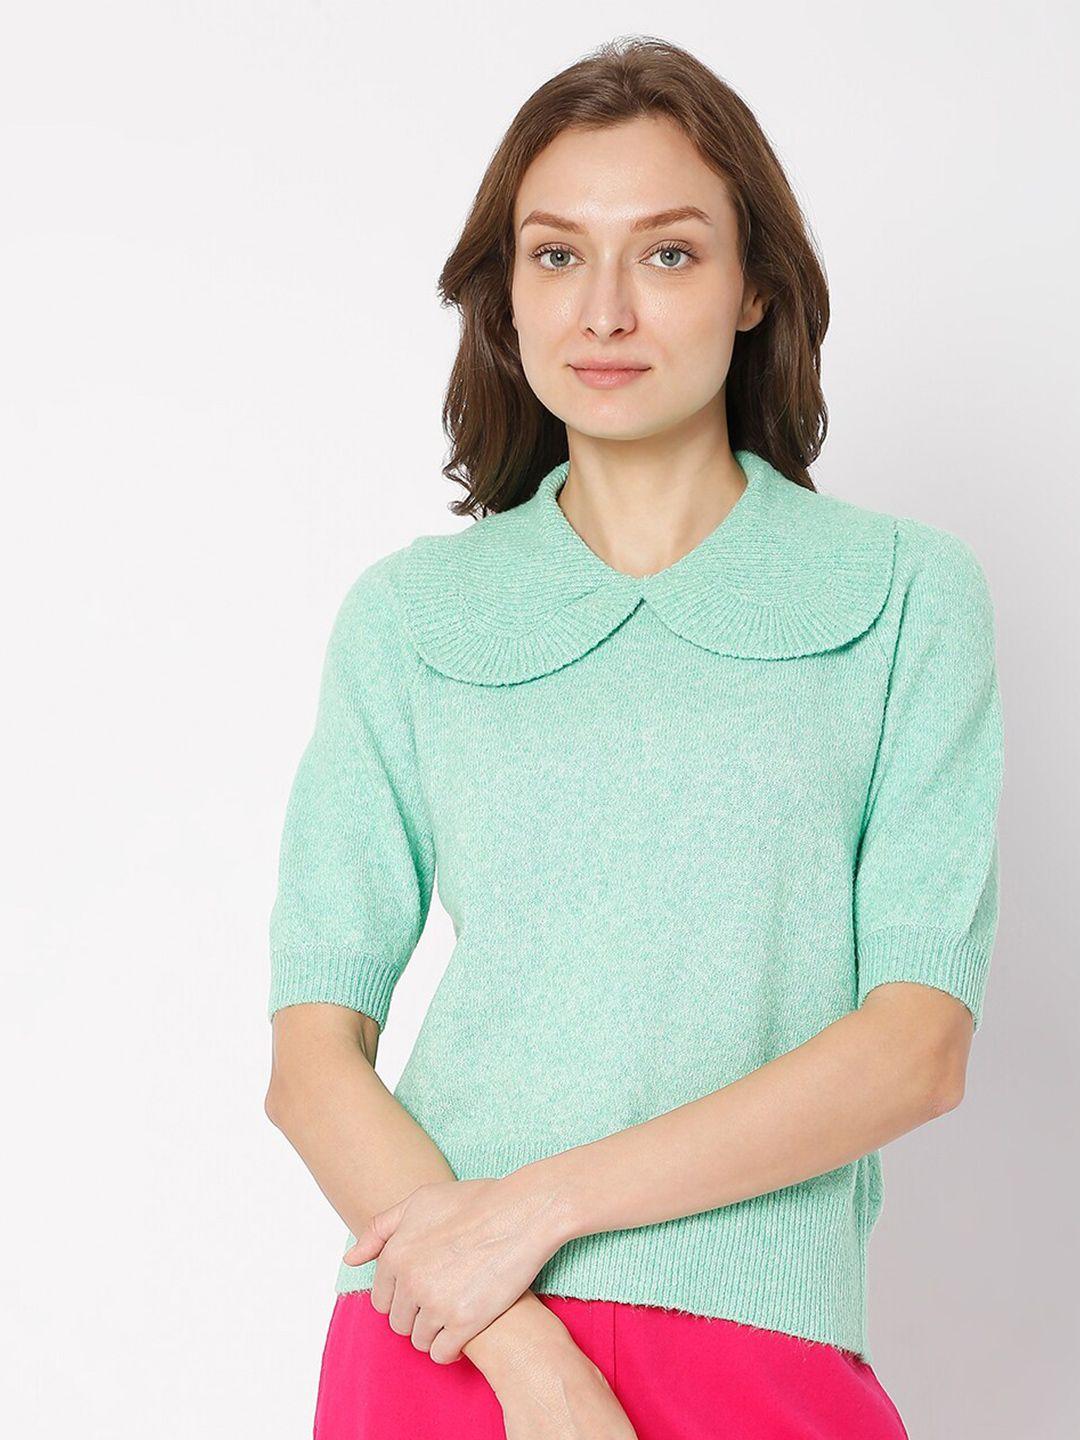 vero moda women irish green peter pan collar sweater